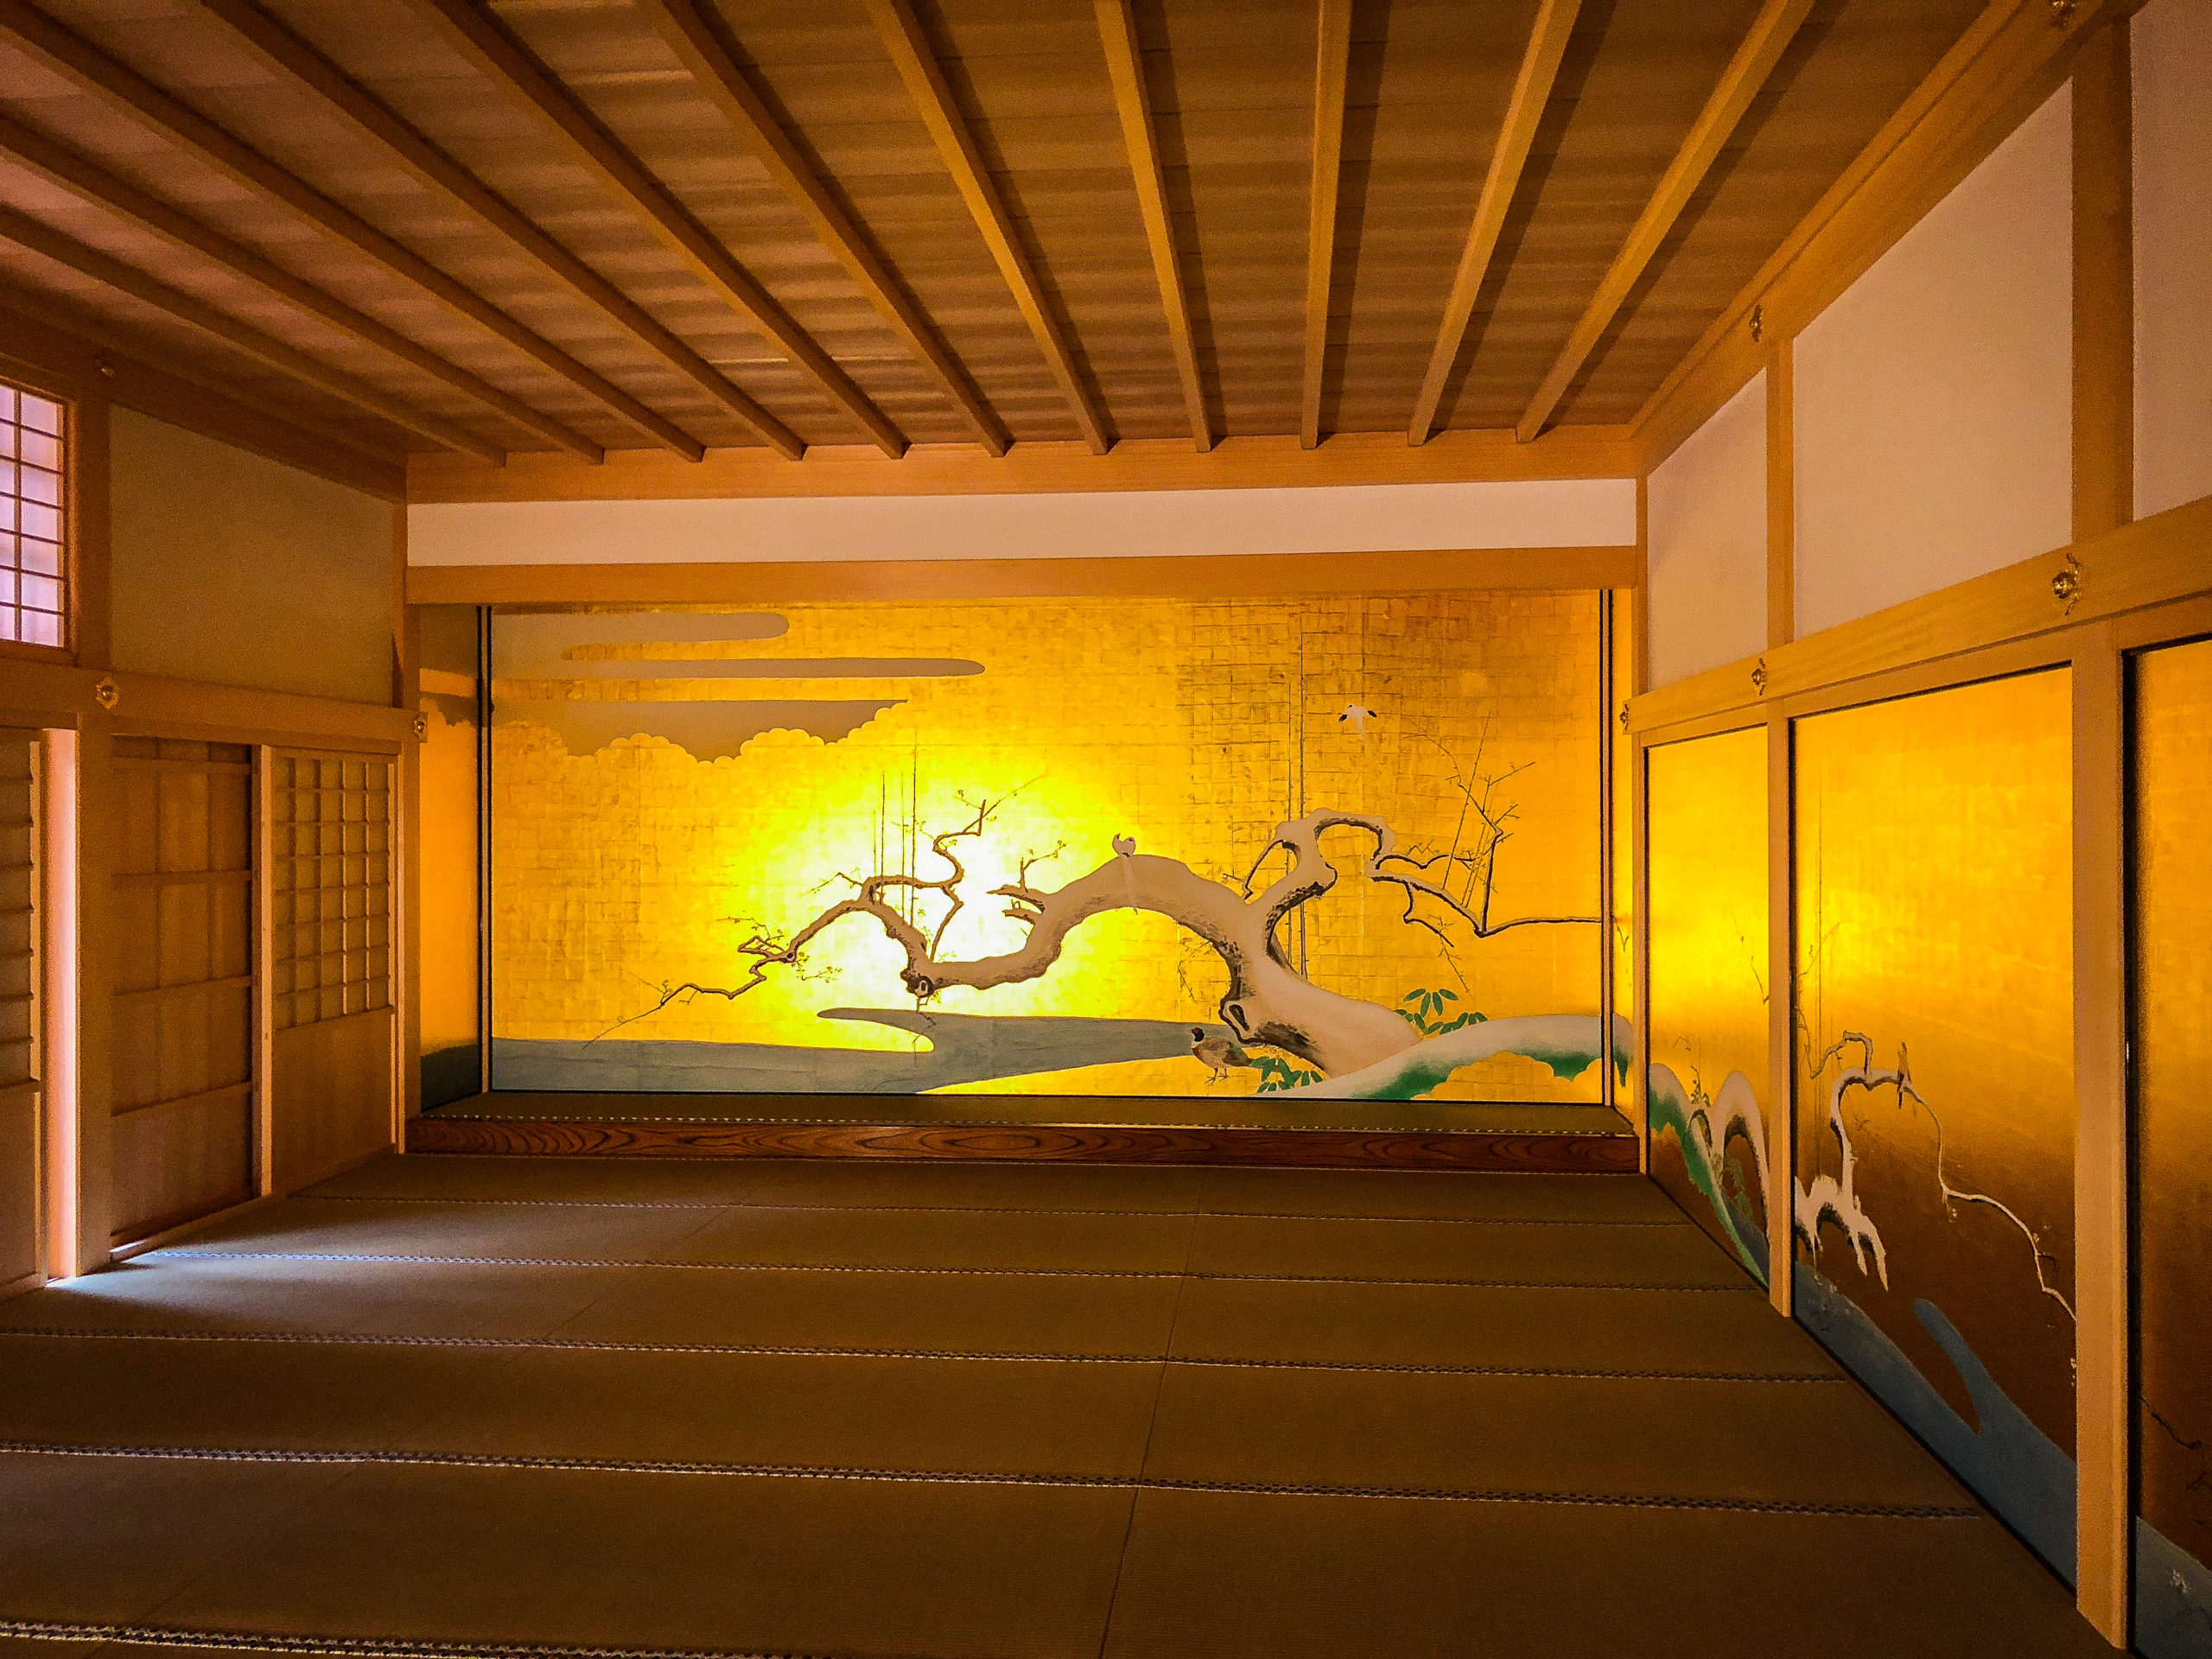 Mural arts inside Nagoy Castle in Japan